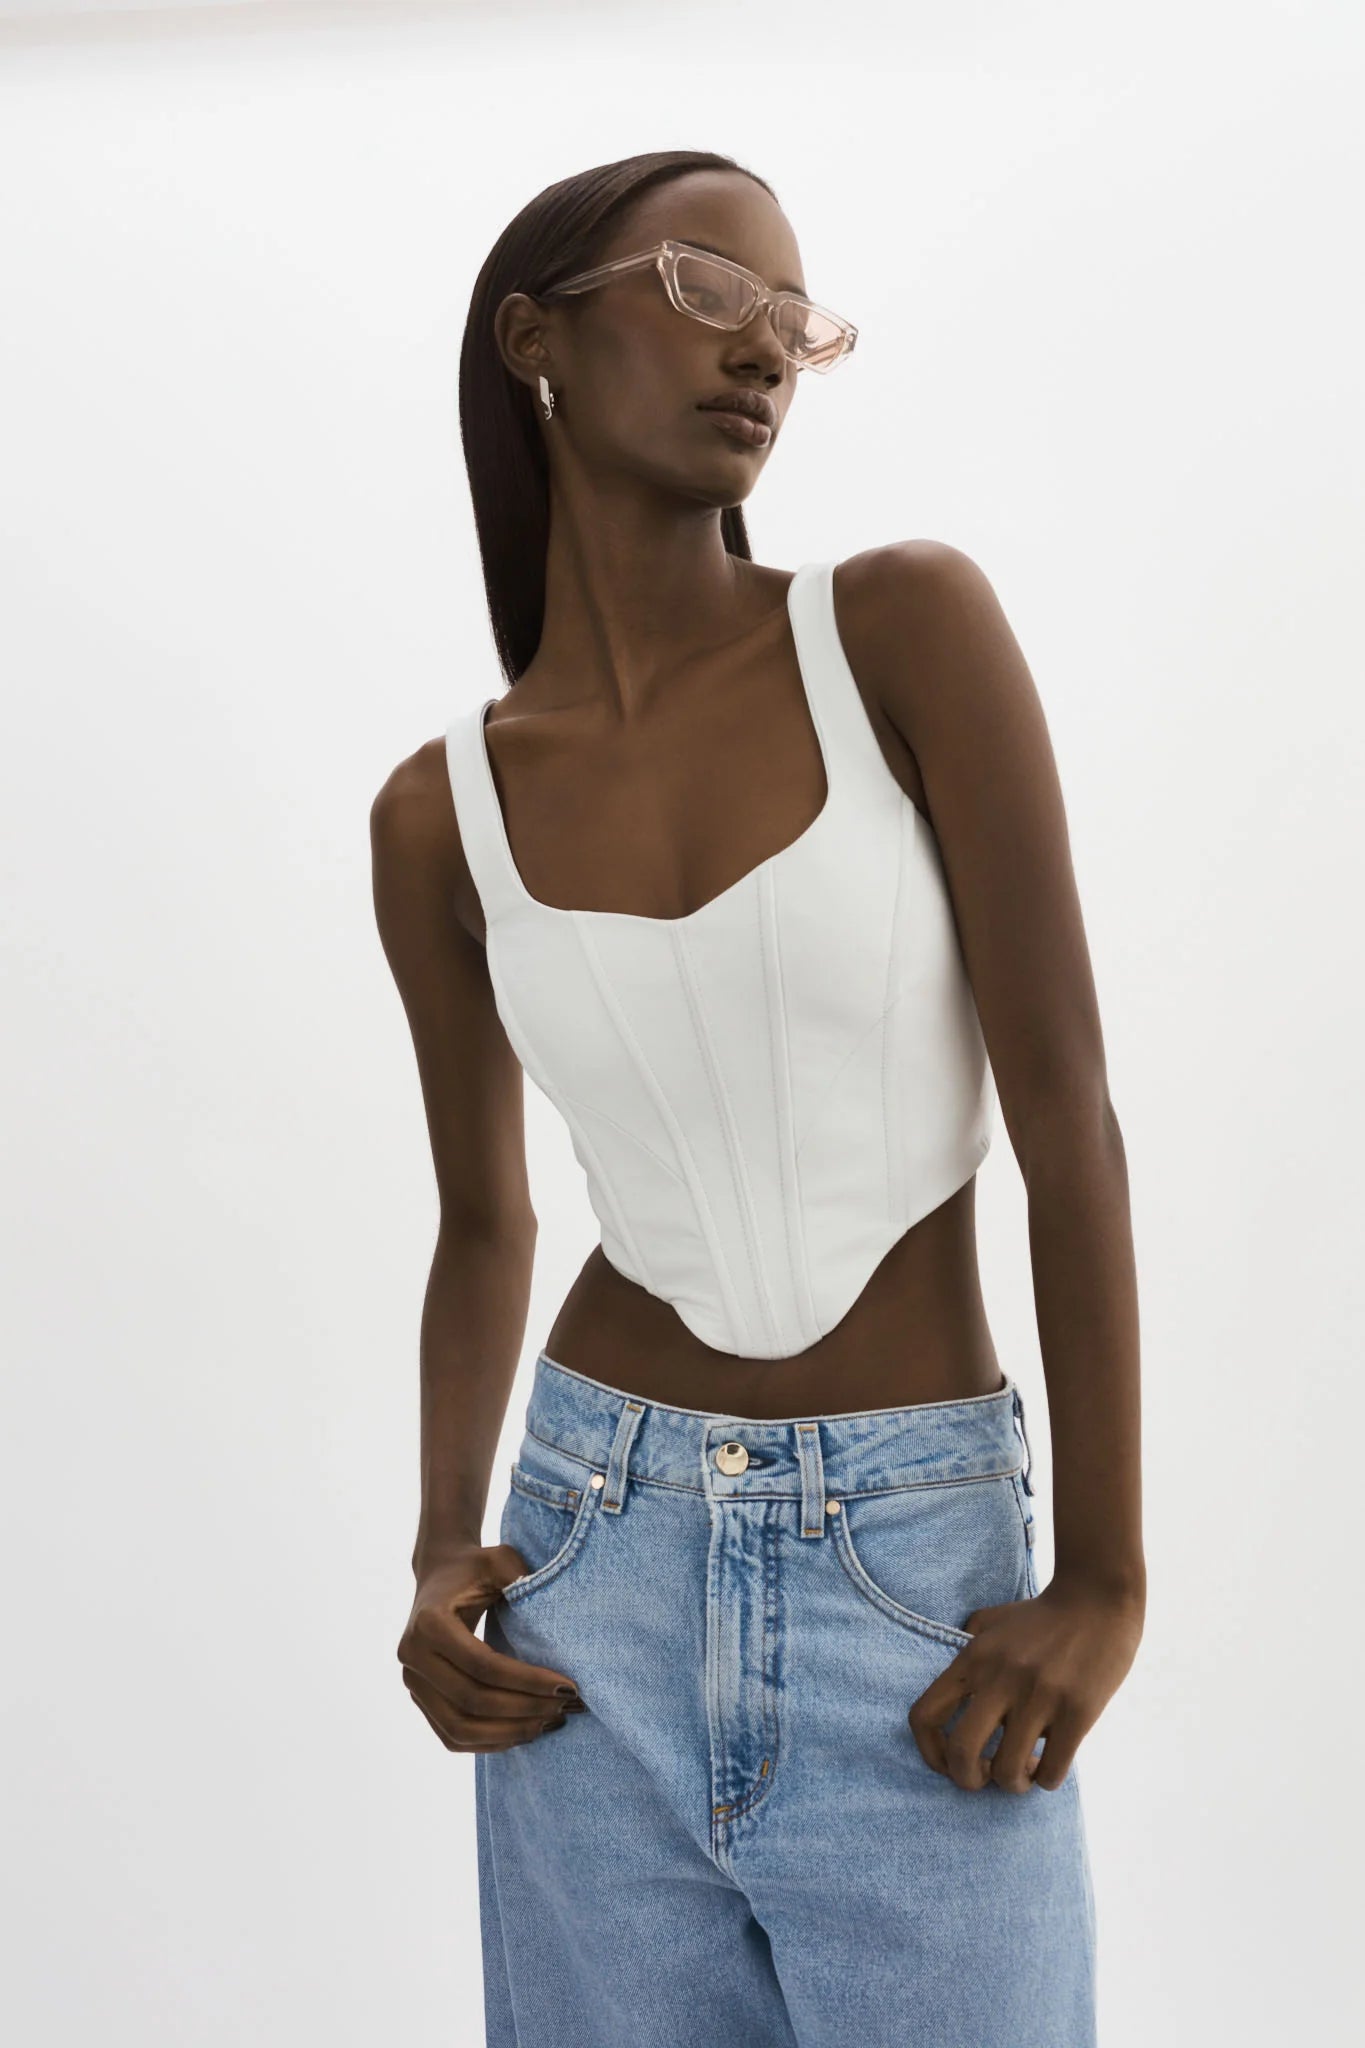 http://estiloboutique.com/cdn/shop/products/lamarque-tabia-leather-corset-top-in-white-estilo-boutique-294262.webp?v=1693420462